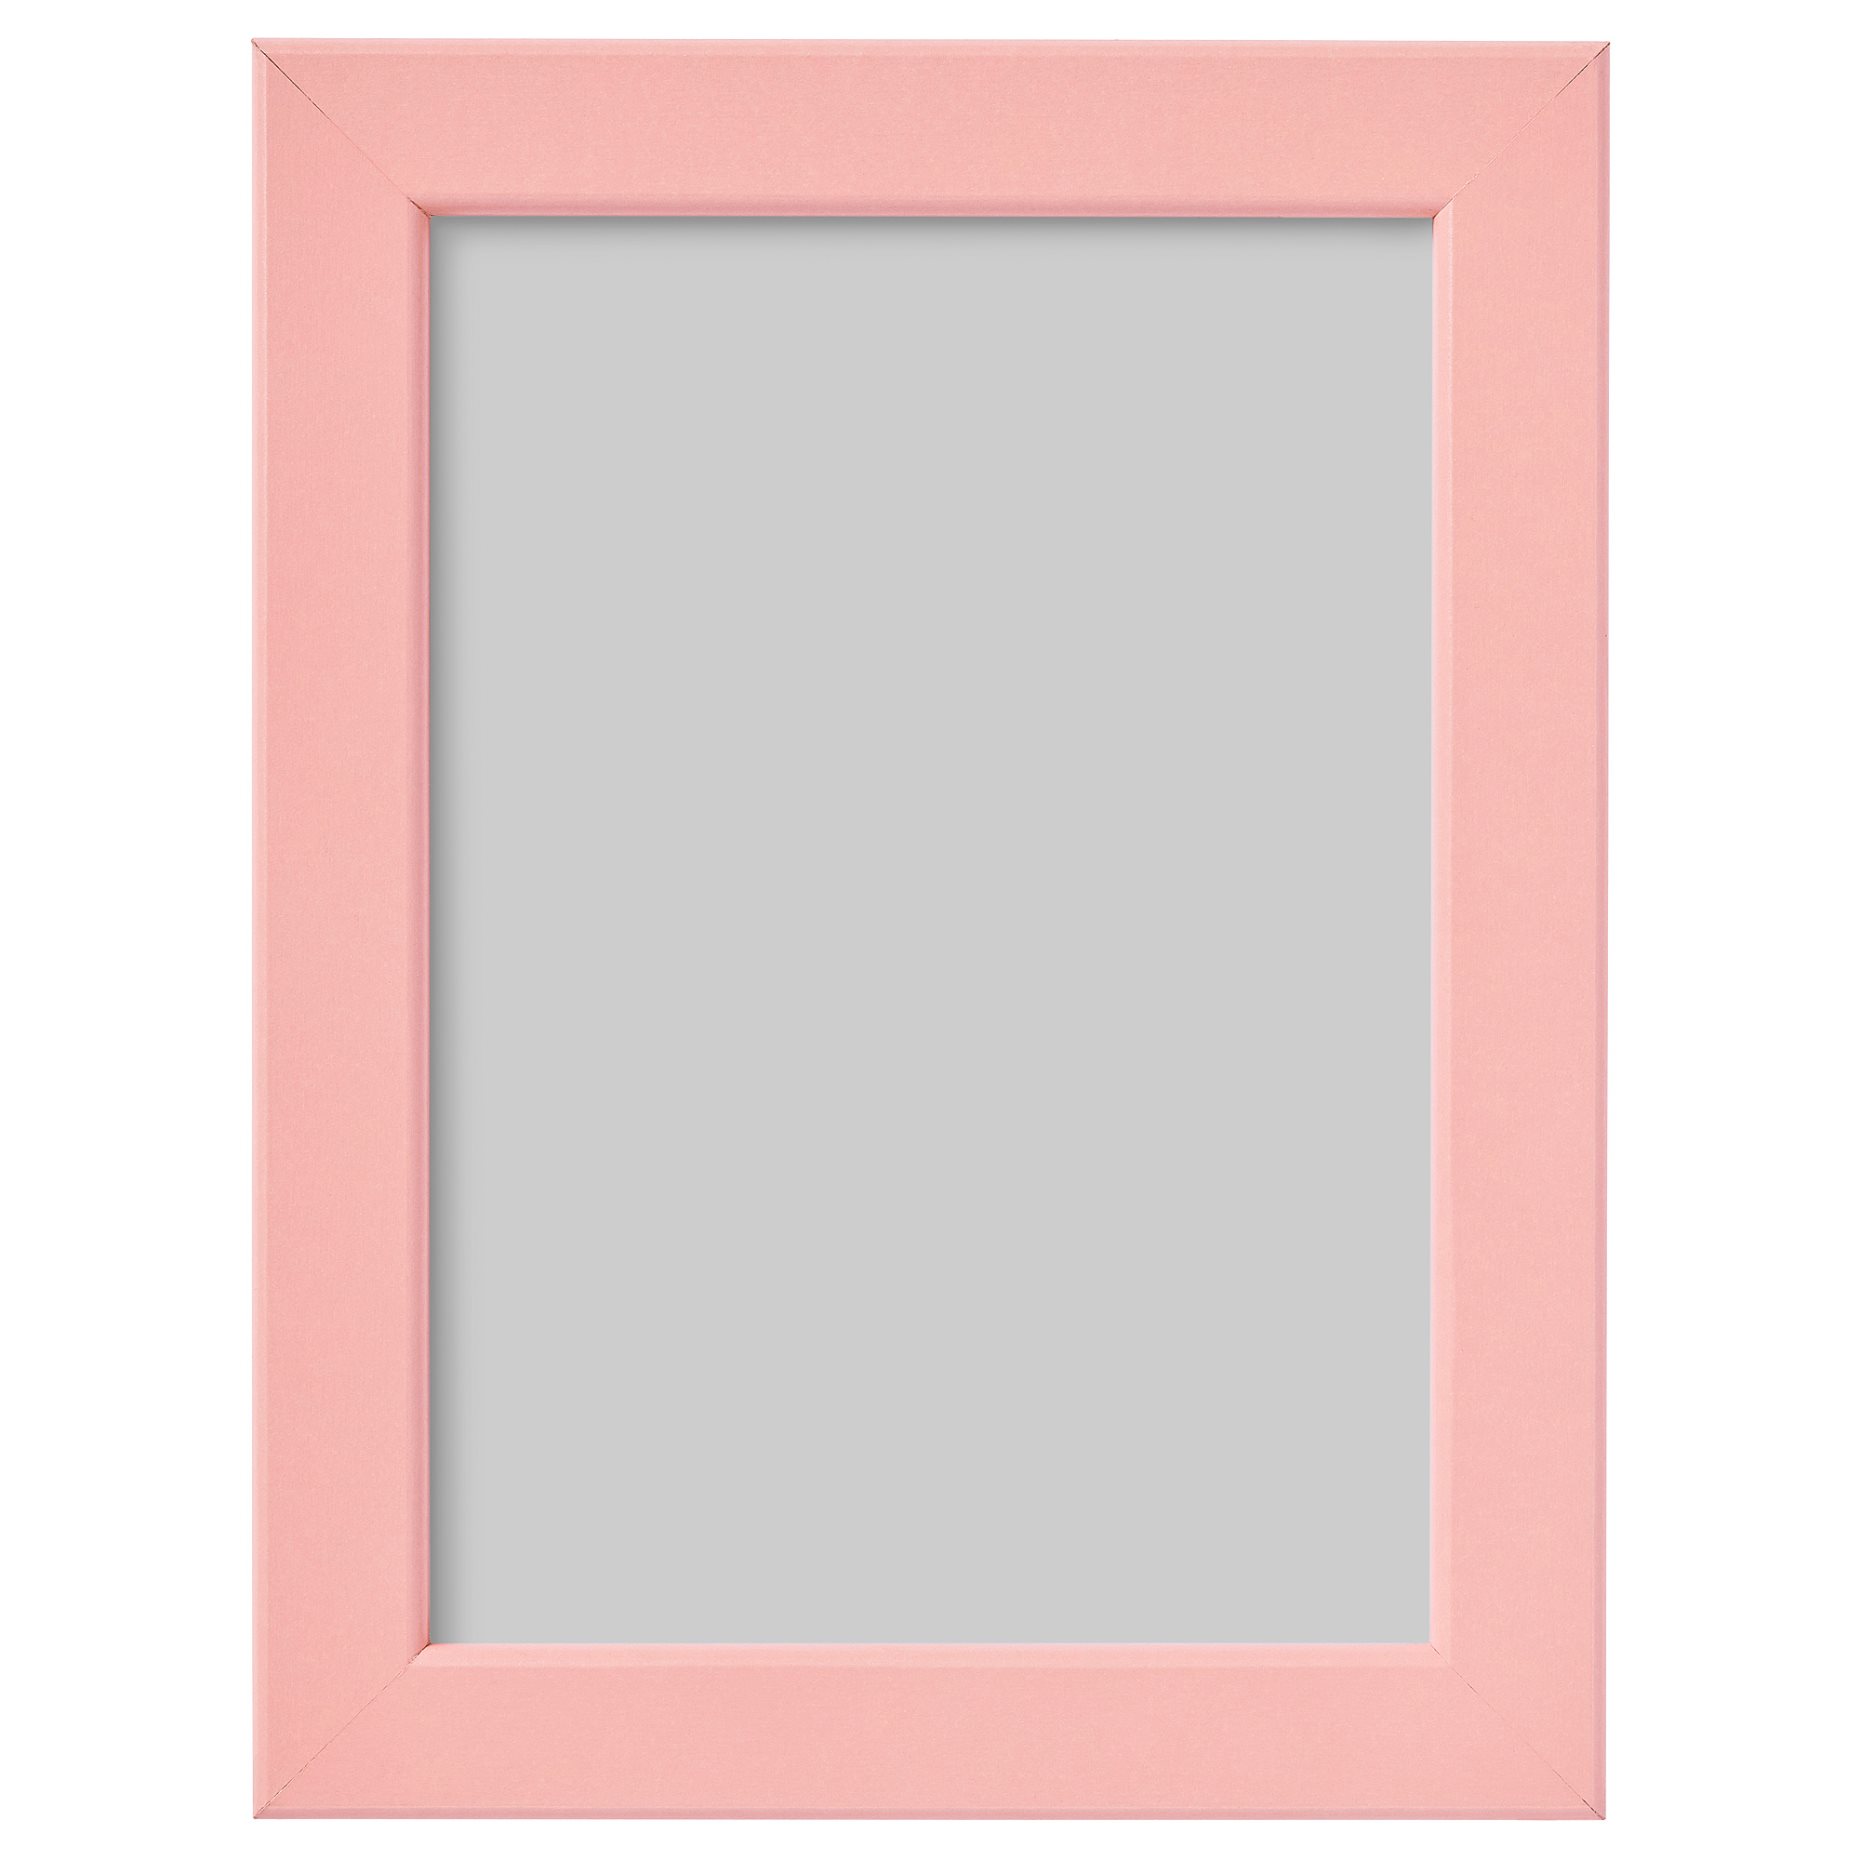 FISKBO, frame, 13x18 cm, 504.647.14